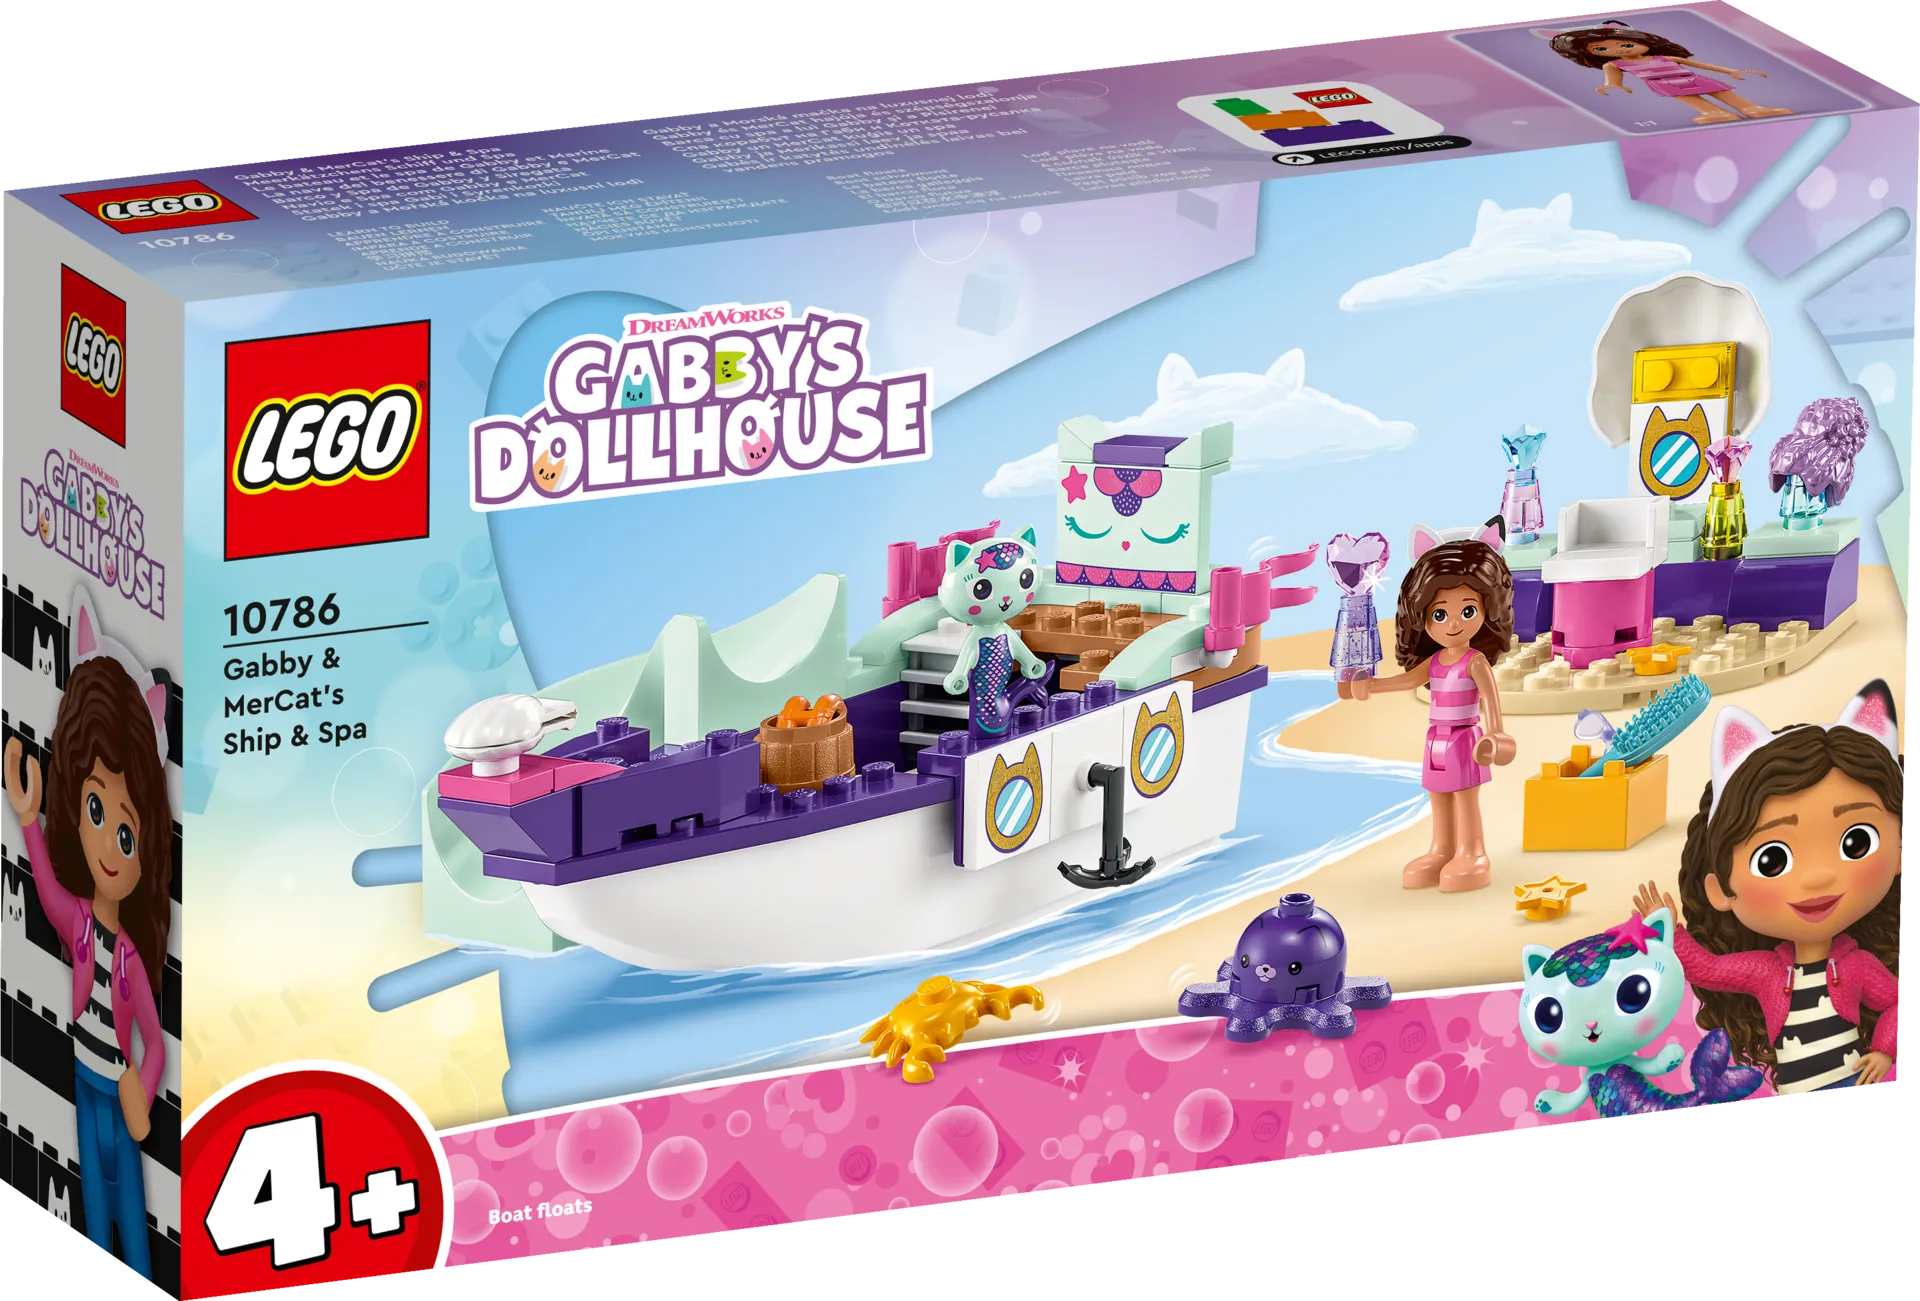 LEGO Gabby's Dollhouse 10786 Gabbyn ja Merikatin laiva ja kylpylä - 1